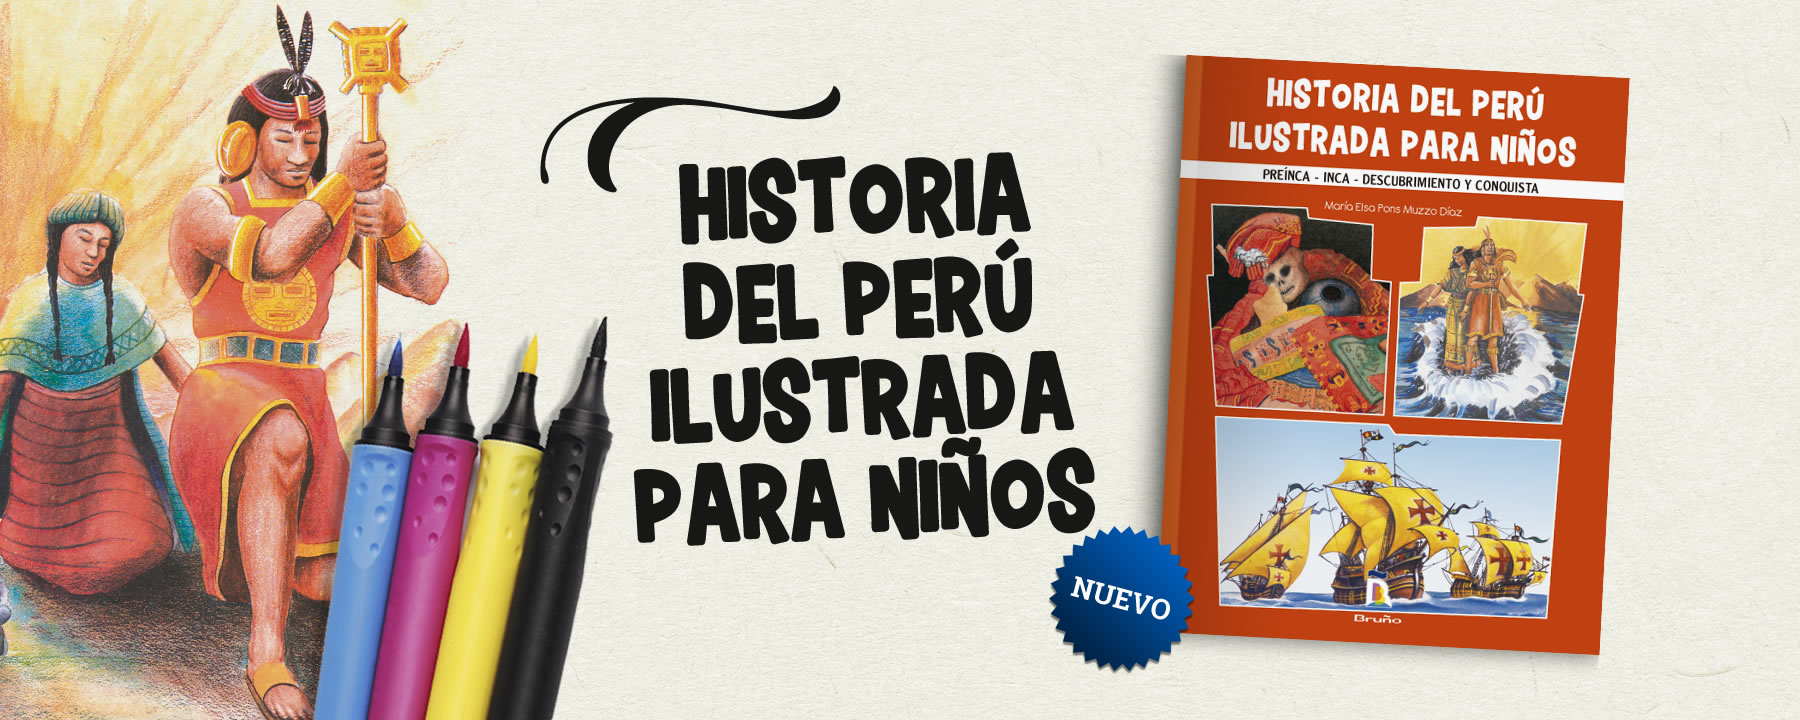 Recorre las diversas etapas históricas de nuestro Perú a través de ilustraciones y breves narraciones.